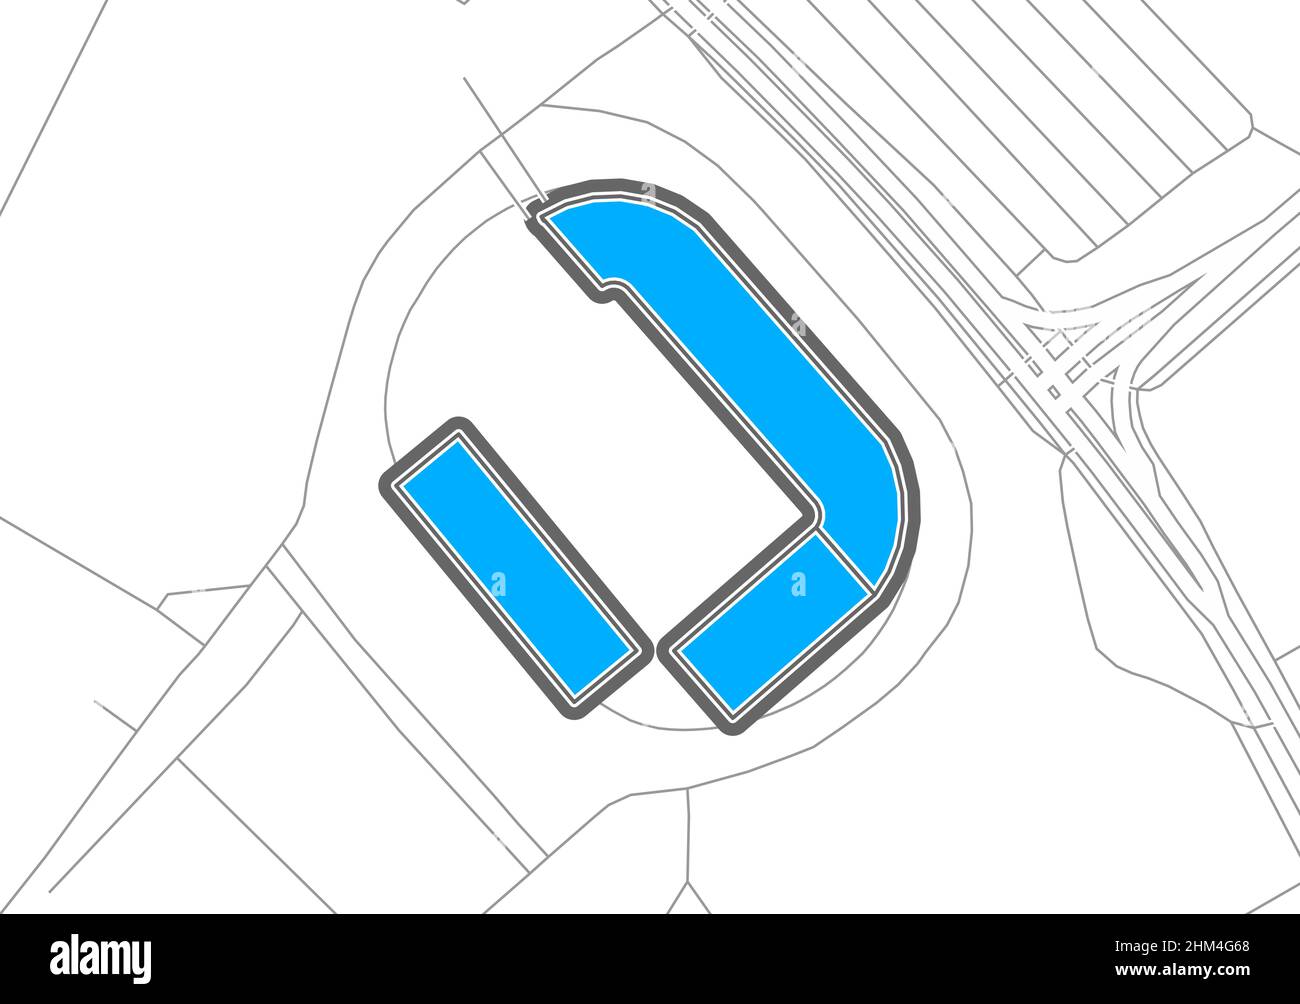 Karlsruhe, stade de football, carte vectorielle.La carte bundesliga statium a été tracée avec des zones blanches et des lignes pour les routes principales, les routes latérales. Illustration de Vecteur